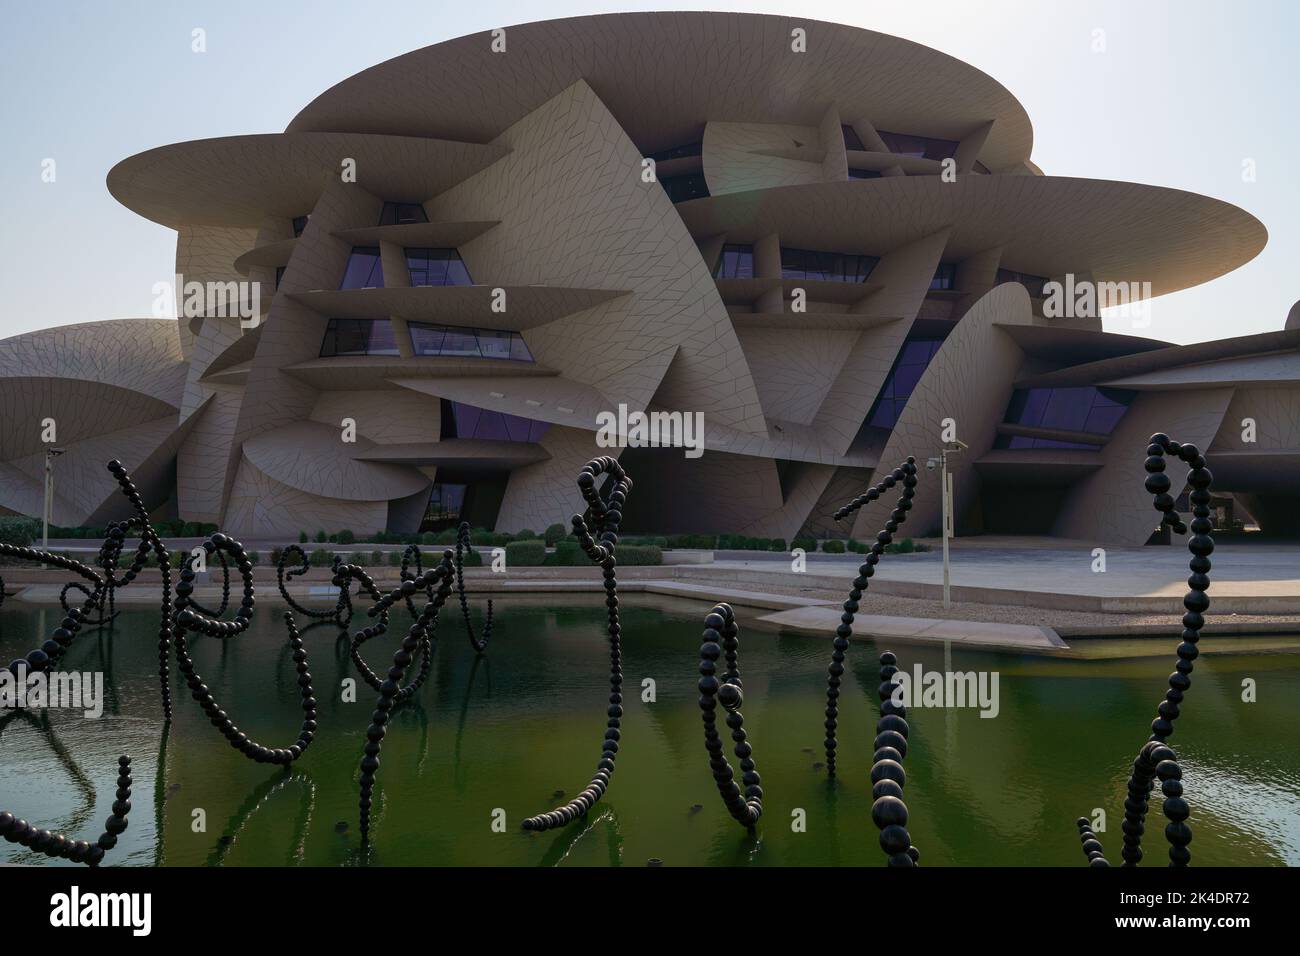 Doha, Katar, 1. Oktober 2022. Das Nationalmuseum von Katar wurde am 28. März 2019 der Öffentlichkeit zugänglich gemacht. Das Gebäude wurde von dem Architekten Jean Nouvel entworfen, der sich von dem Wüstenrosenkristall inspirieren ließ, der in Katar zu finden ist. Stockfoto